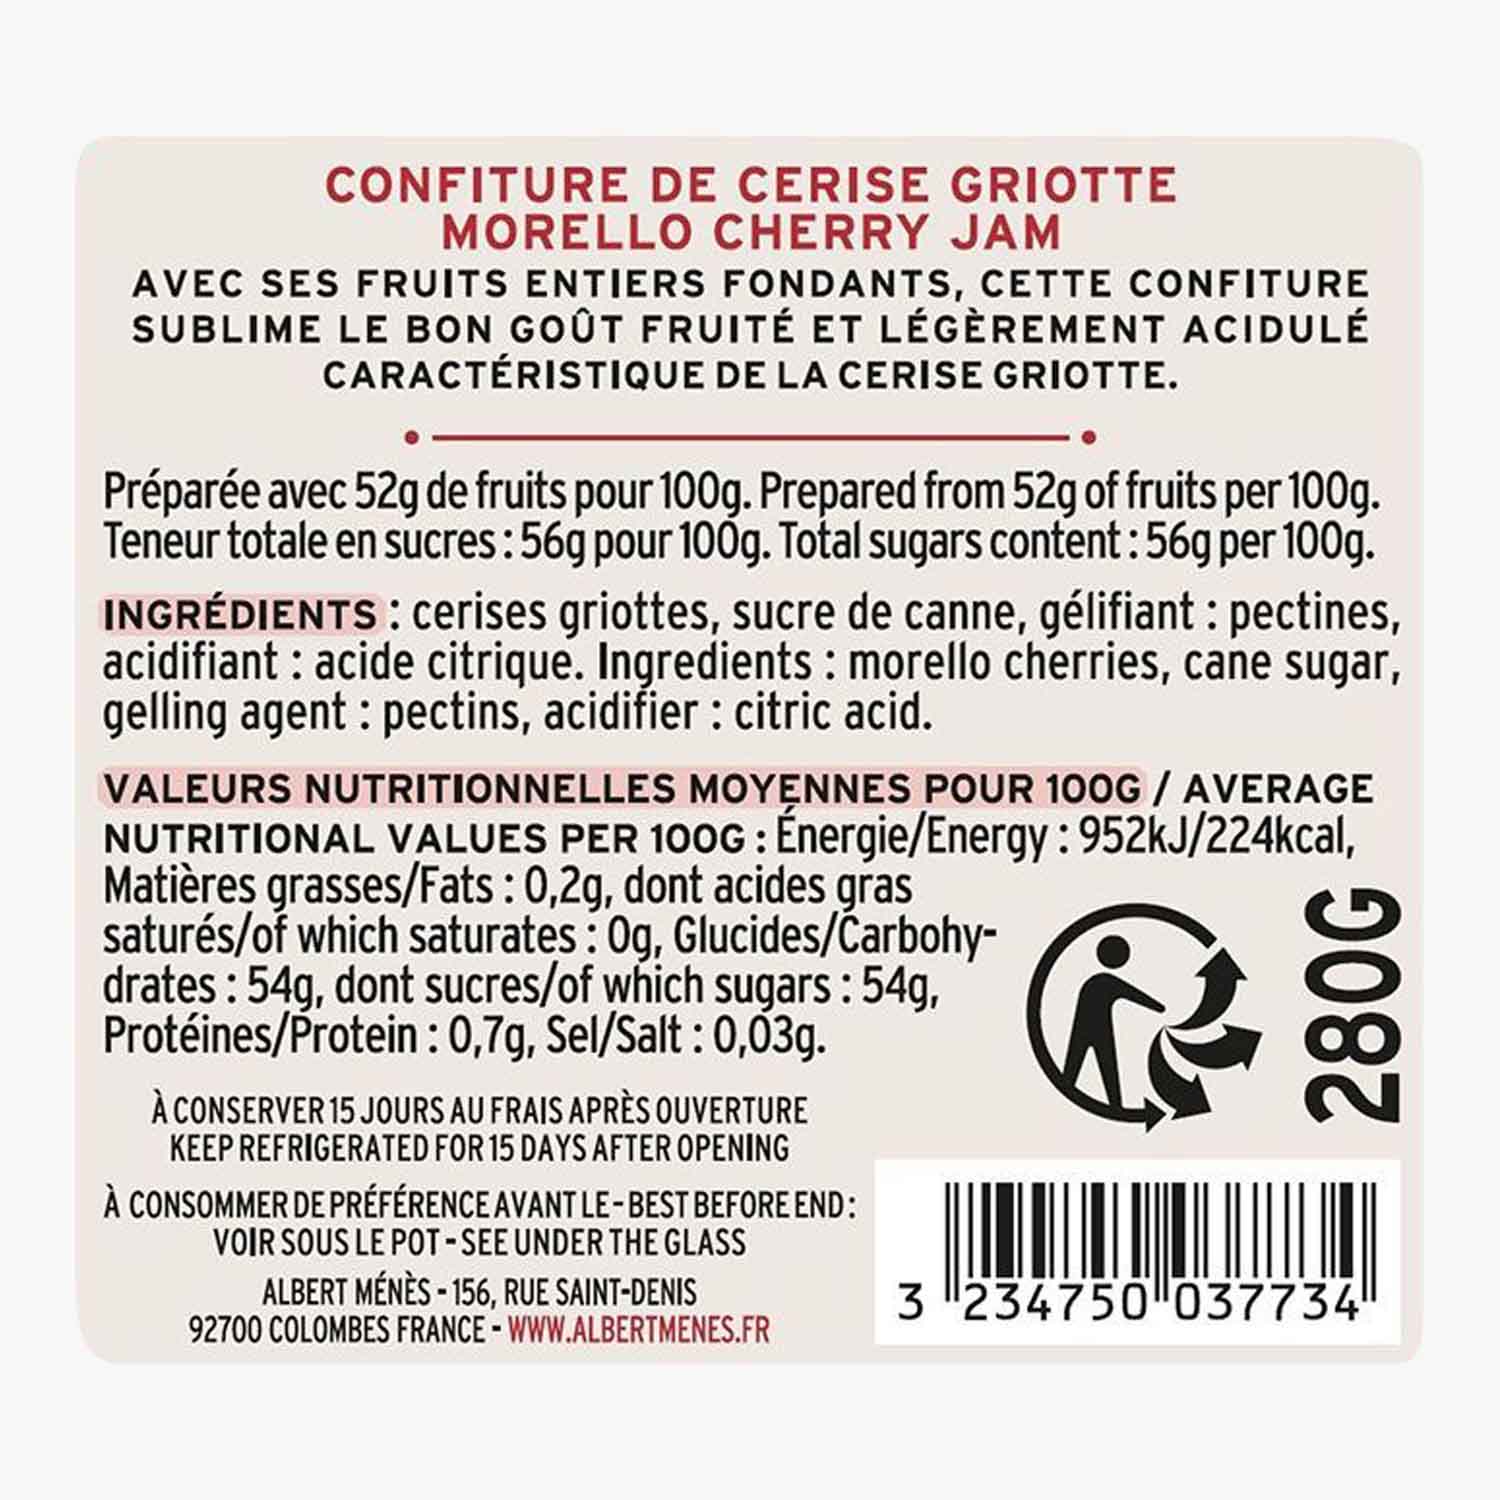 Confiture de cerise griotte - Albert Ménès - 280 g